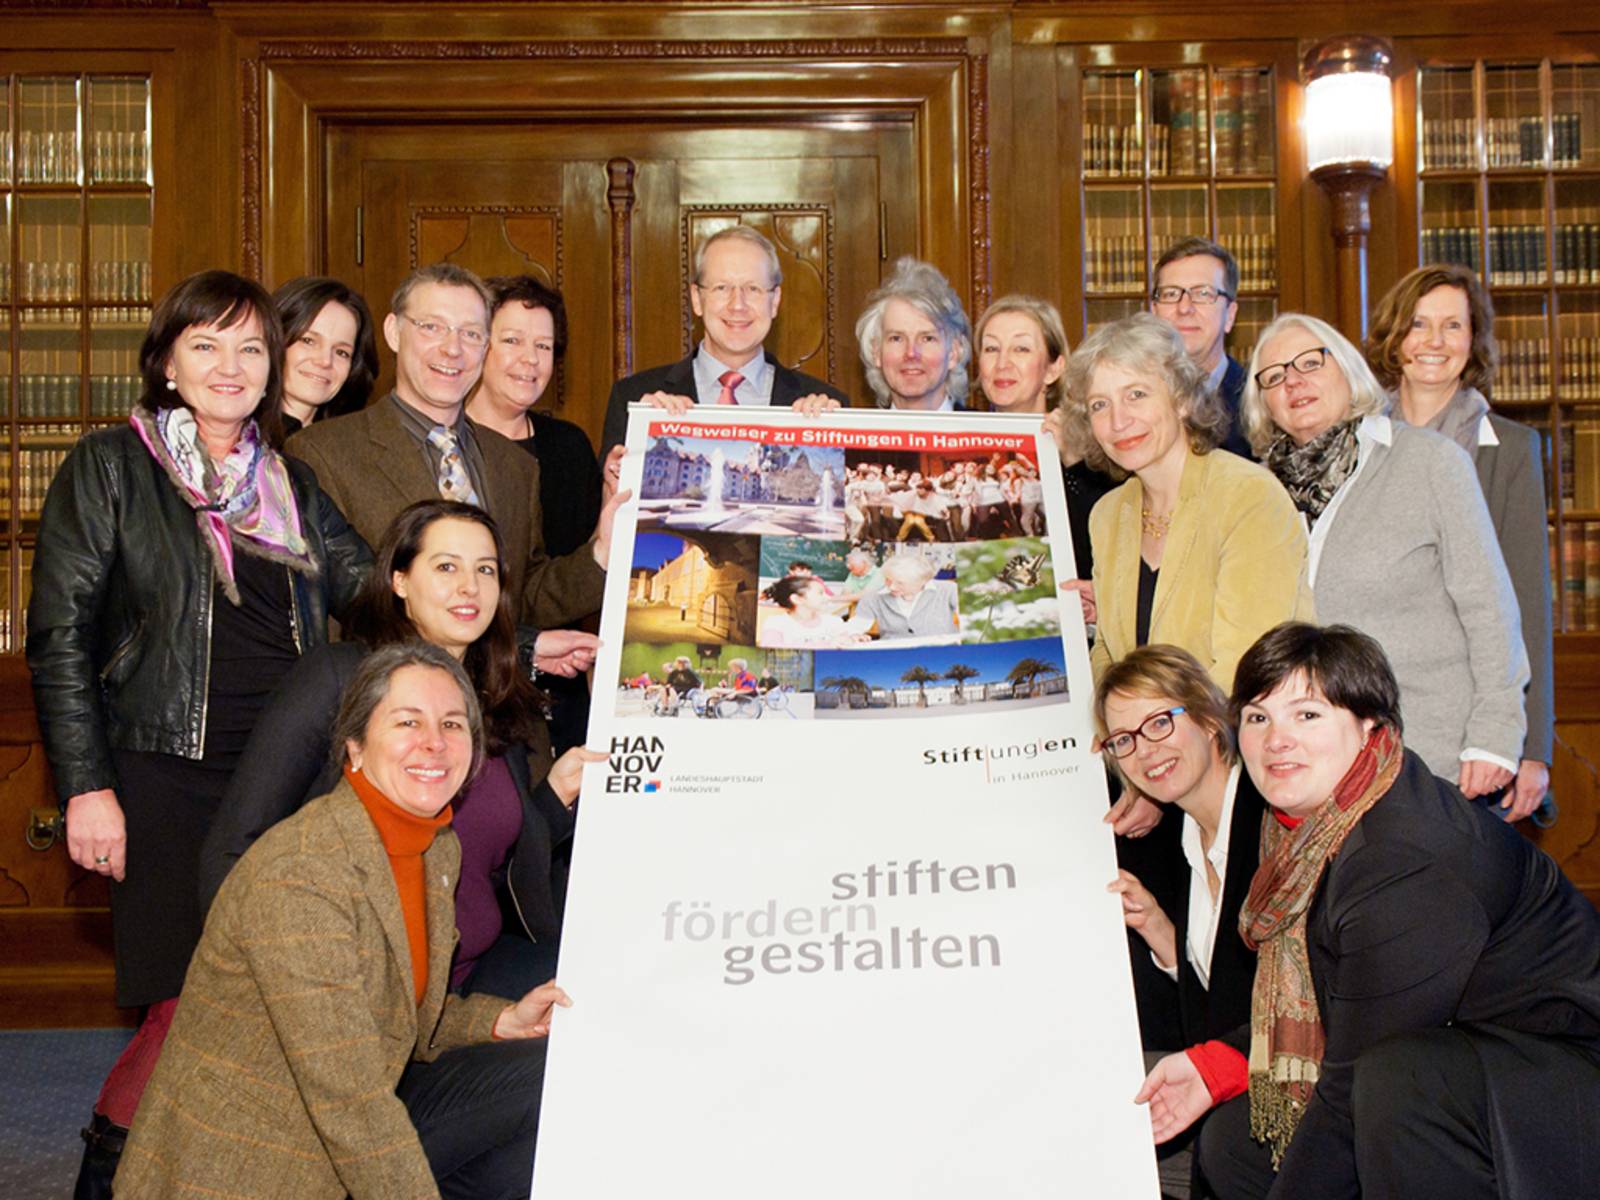 Die Mitglieder des Koordinierungskreises der Stiftungsinitiative Hannover und der damalige Oberbürgermeister Schostok präsentieren den Wegweiser zu Stiftungen (Foto aus dem Jahr 2014)